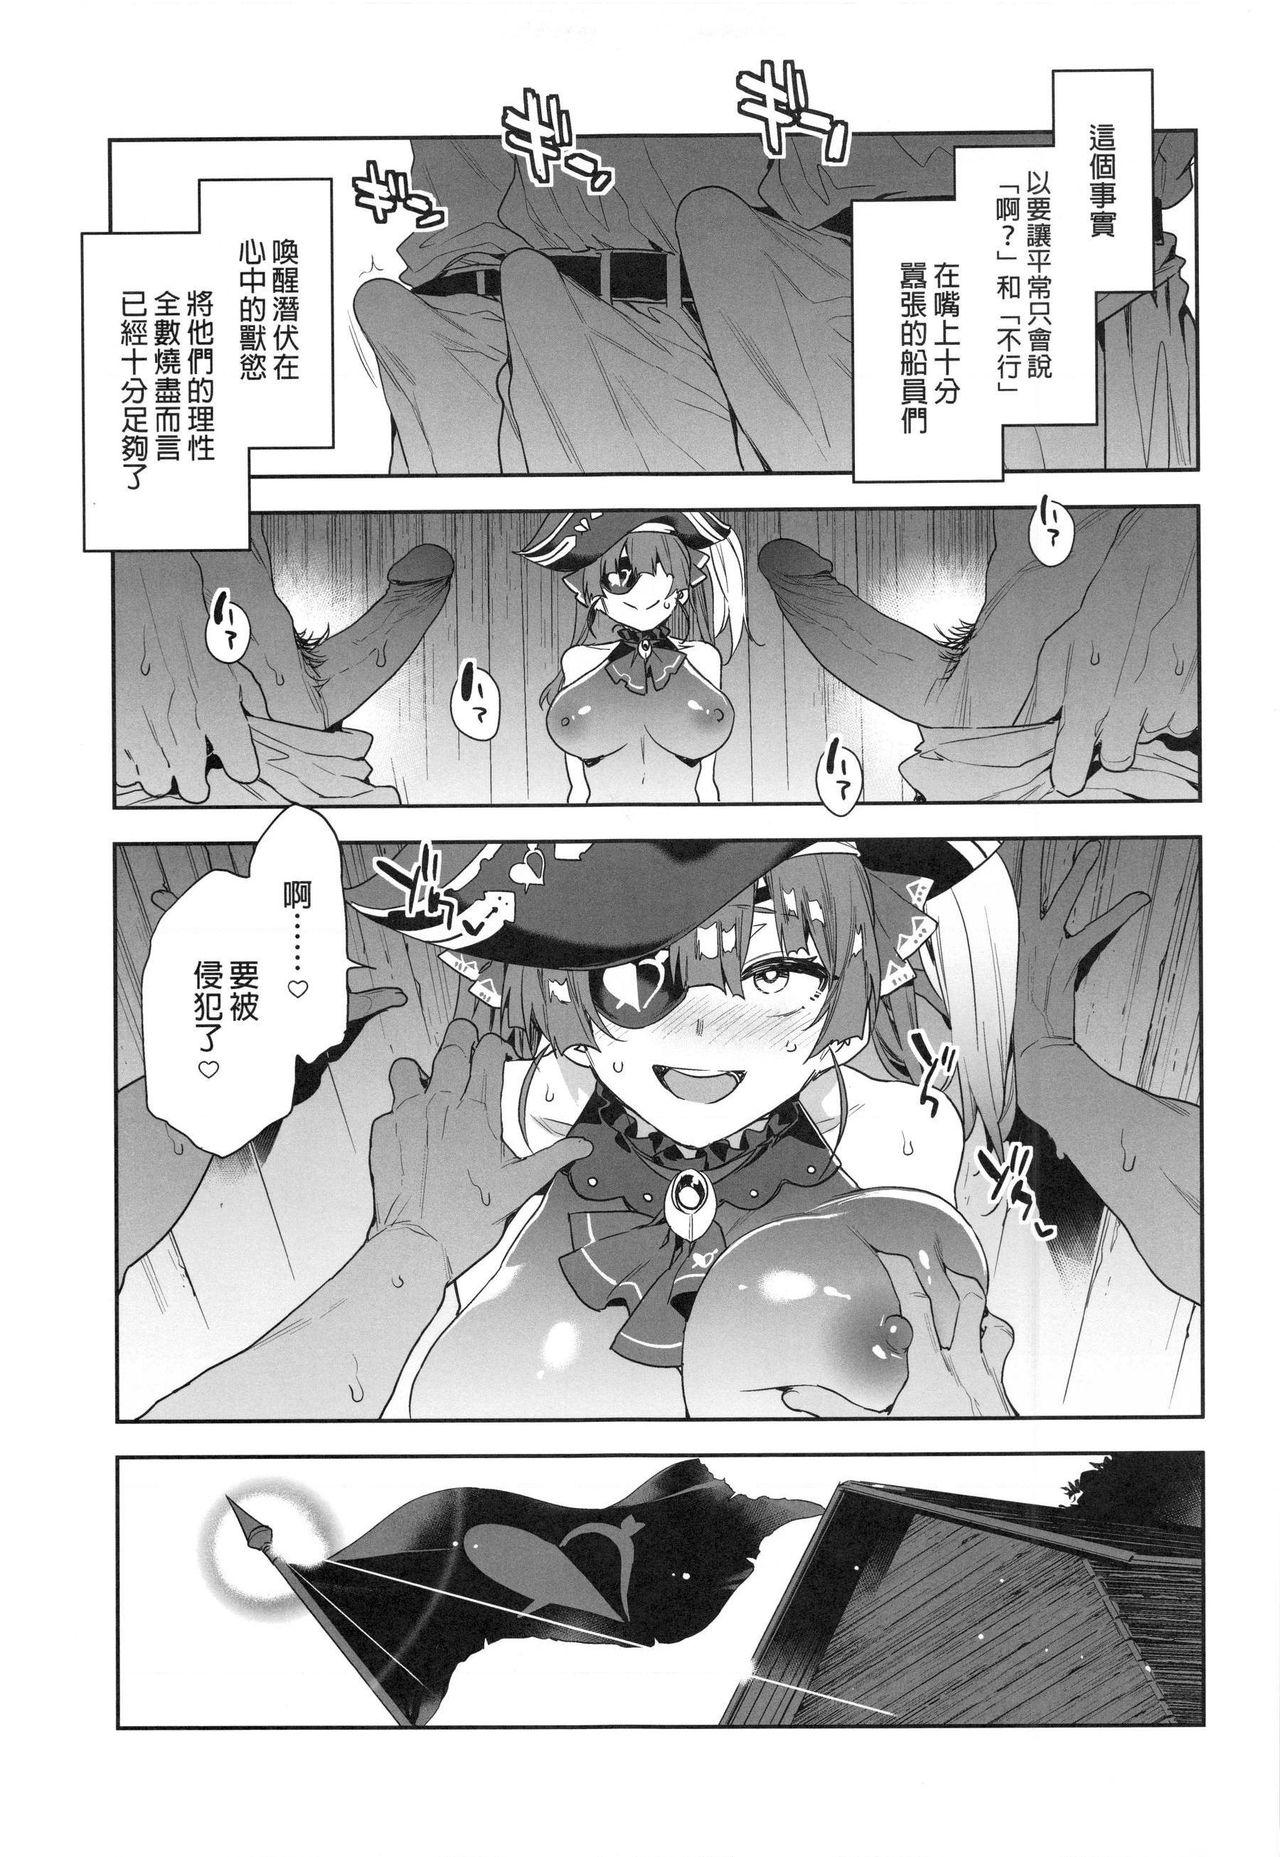 【台灣FF37】[Alice no Takarabako (Mizuryu Kei)] 瑪琳船長想要在不情願的情況下被侵犯 (Houshou Marine)  (hololive)  [Chinese] [Decensored] 10